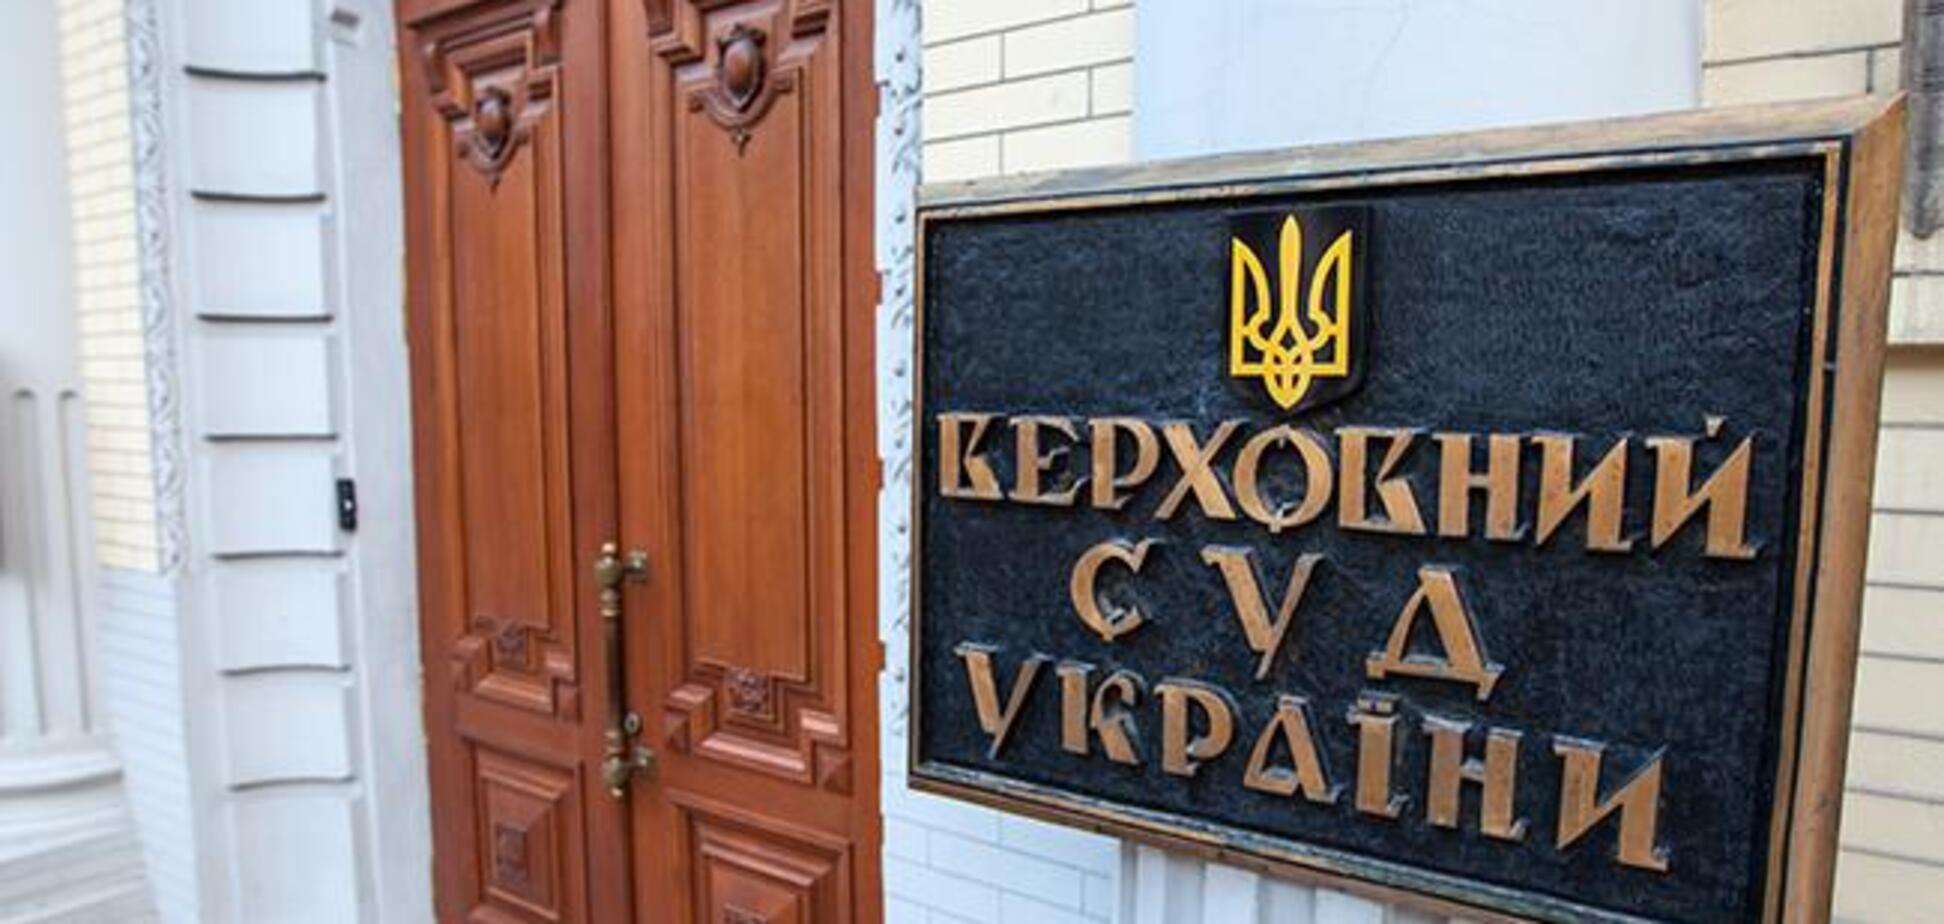 Исторический день: в Украине заработал новый Верховный Суд